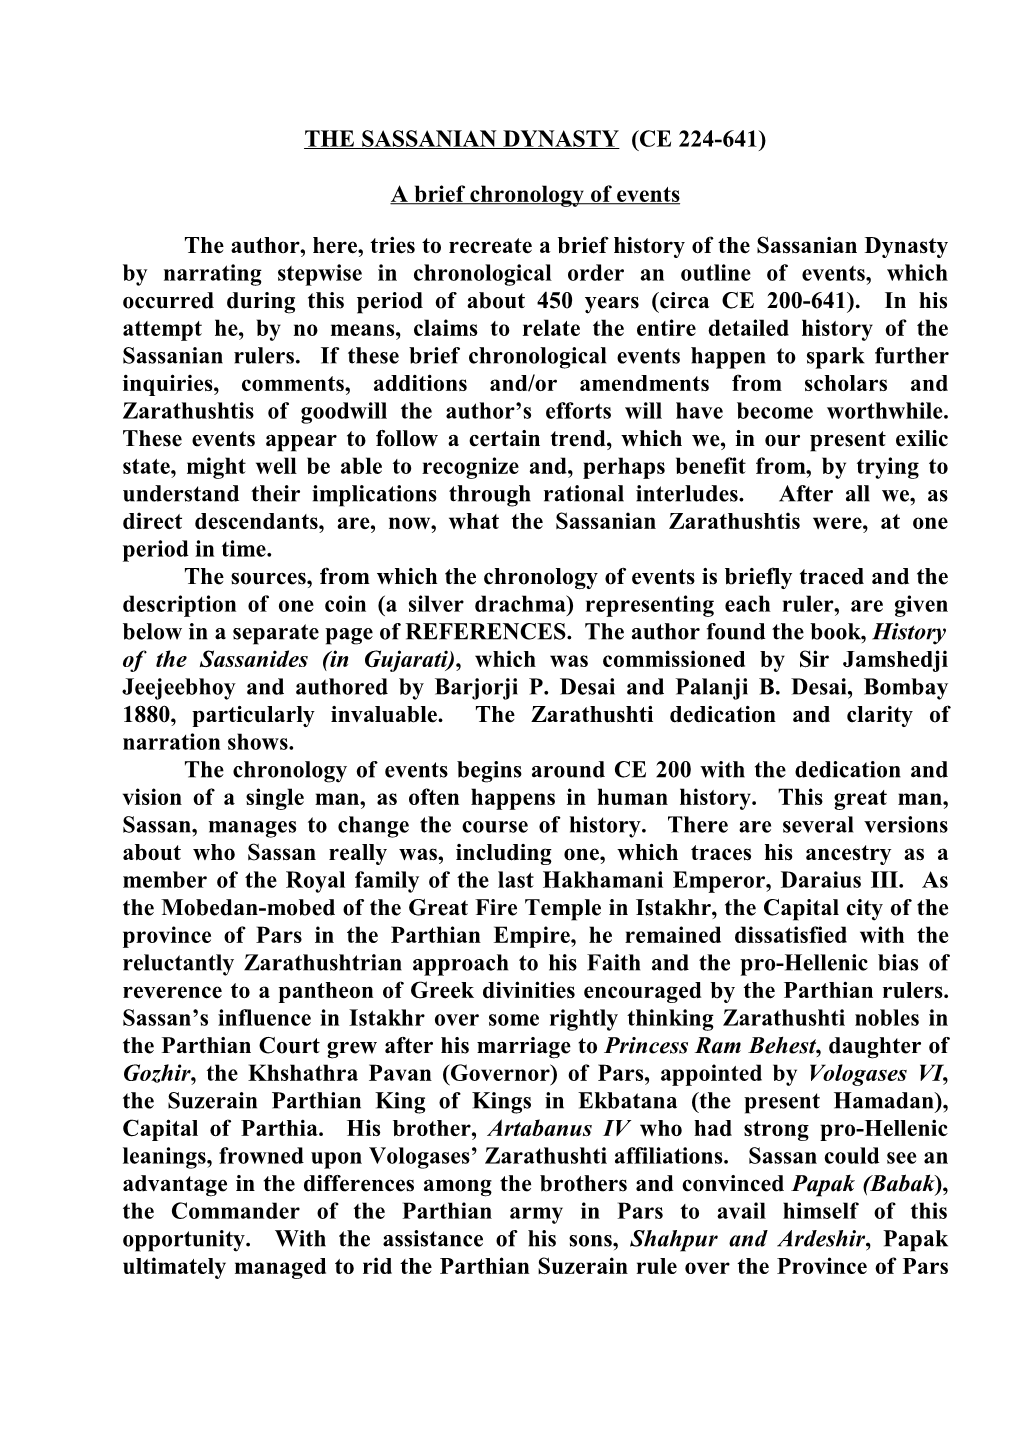 The Sassanian Dynasty (Ce 224-641)